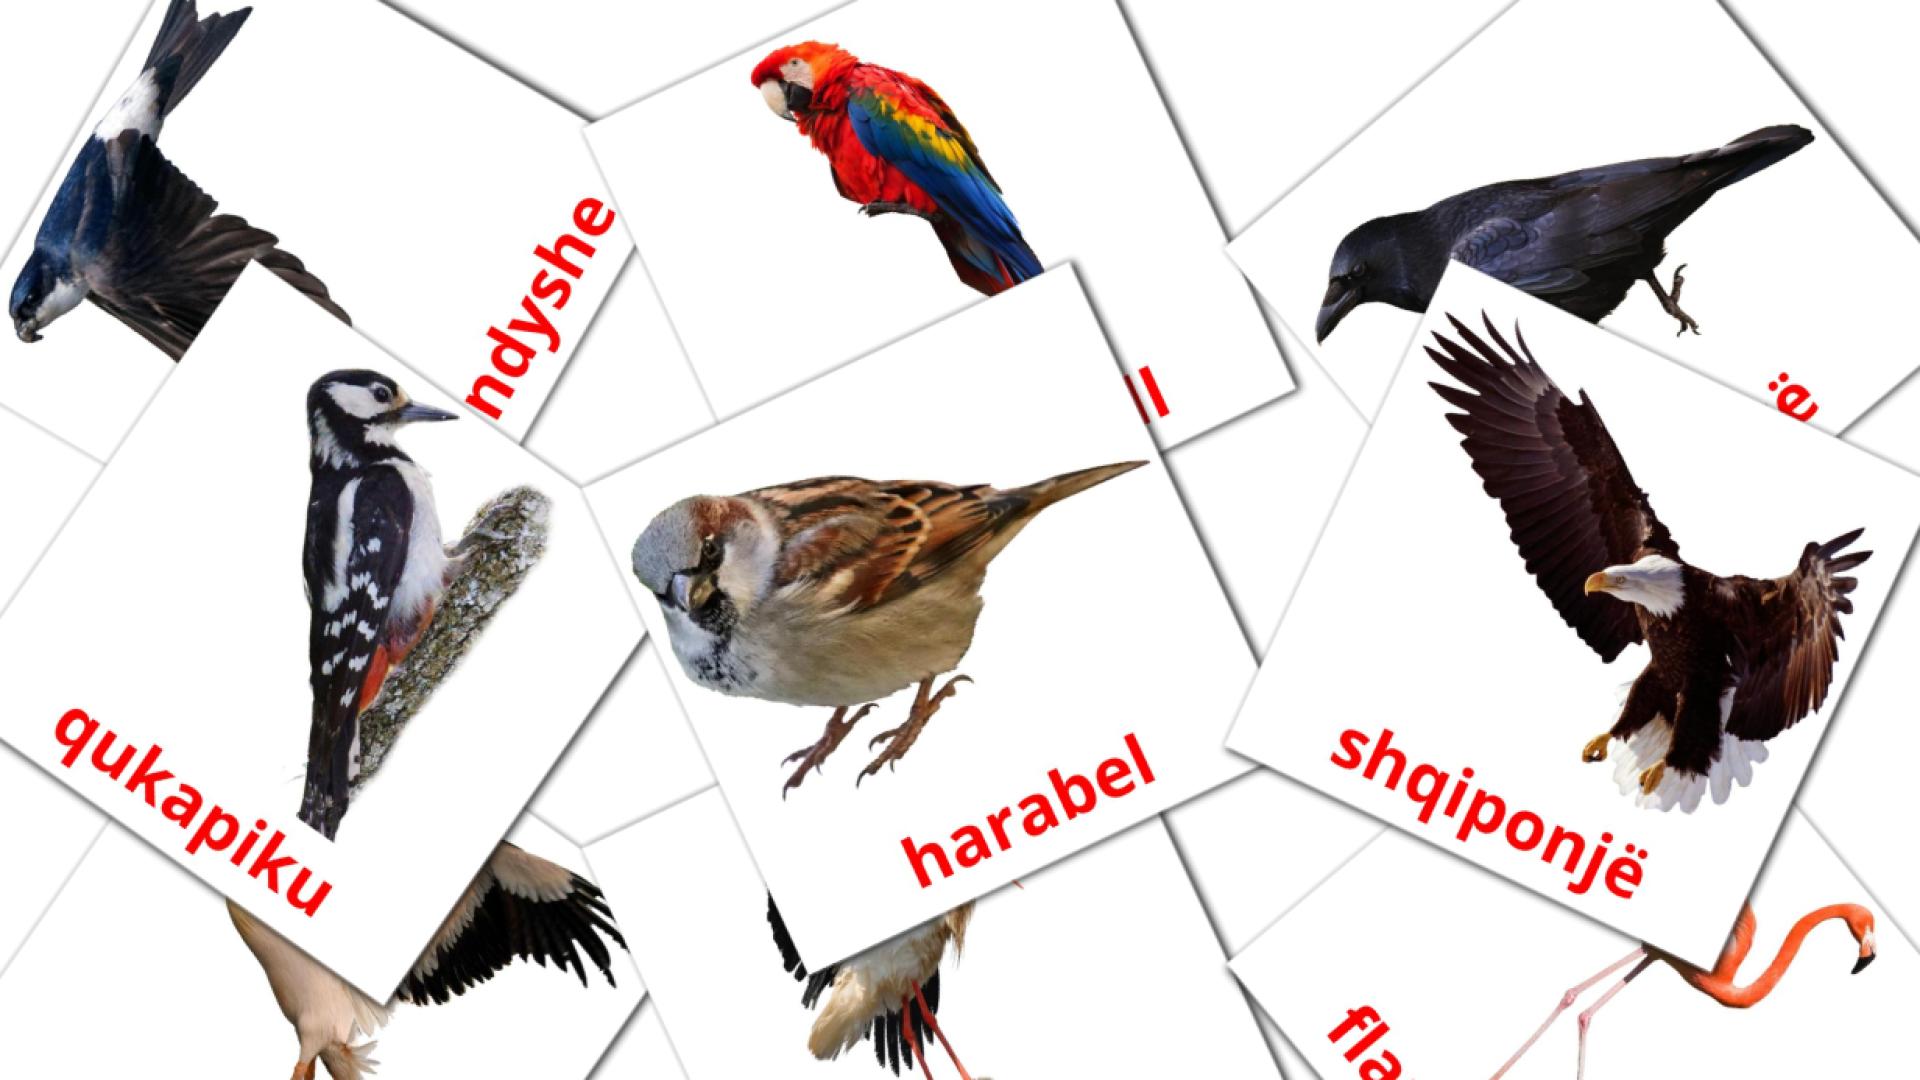 Pájaros salvajes - tarjetas de vocabulario en albanés